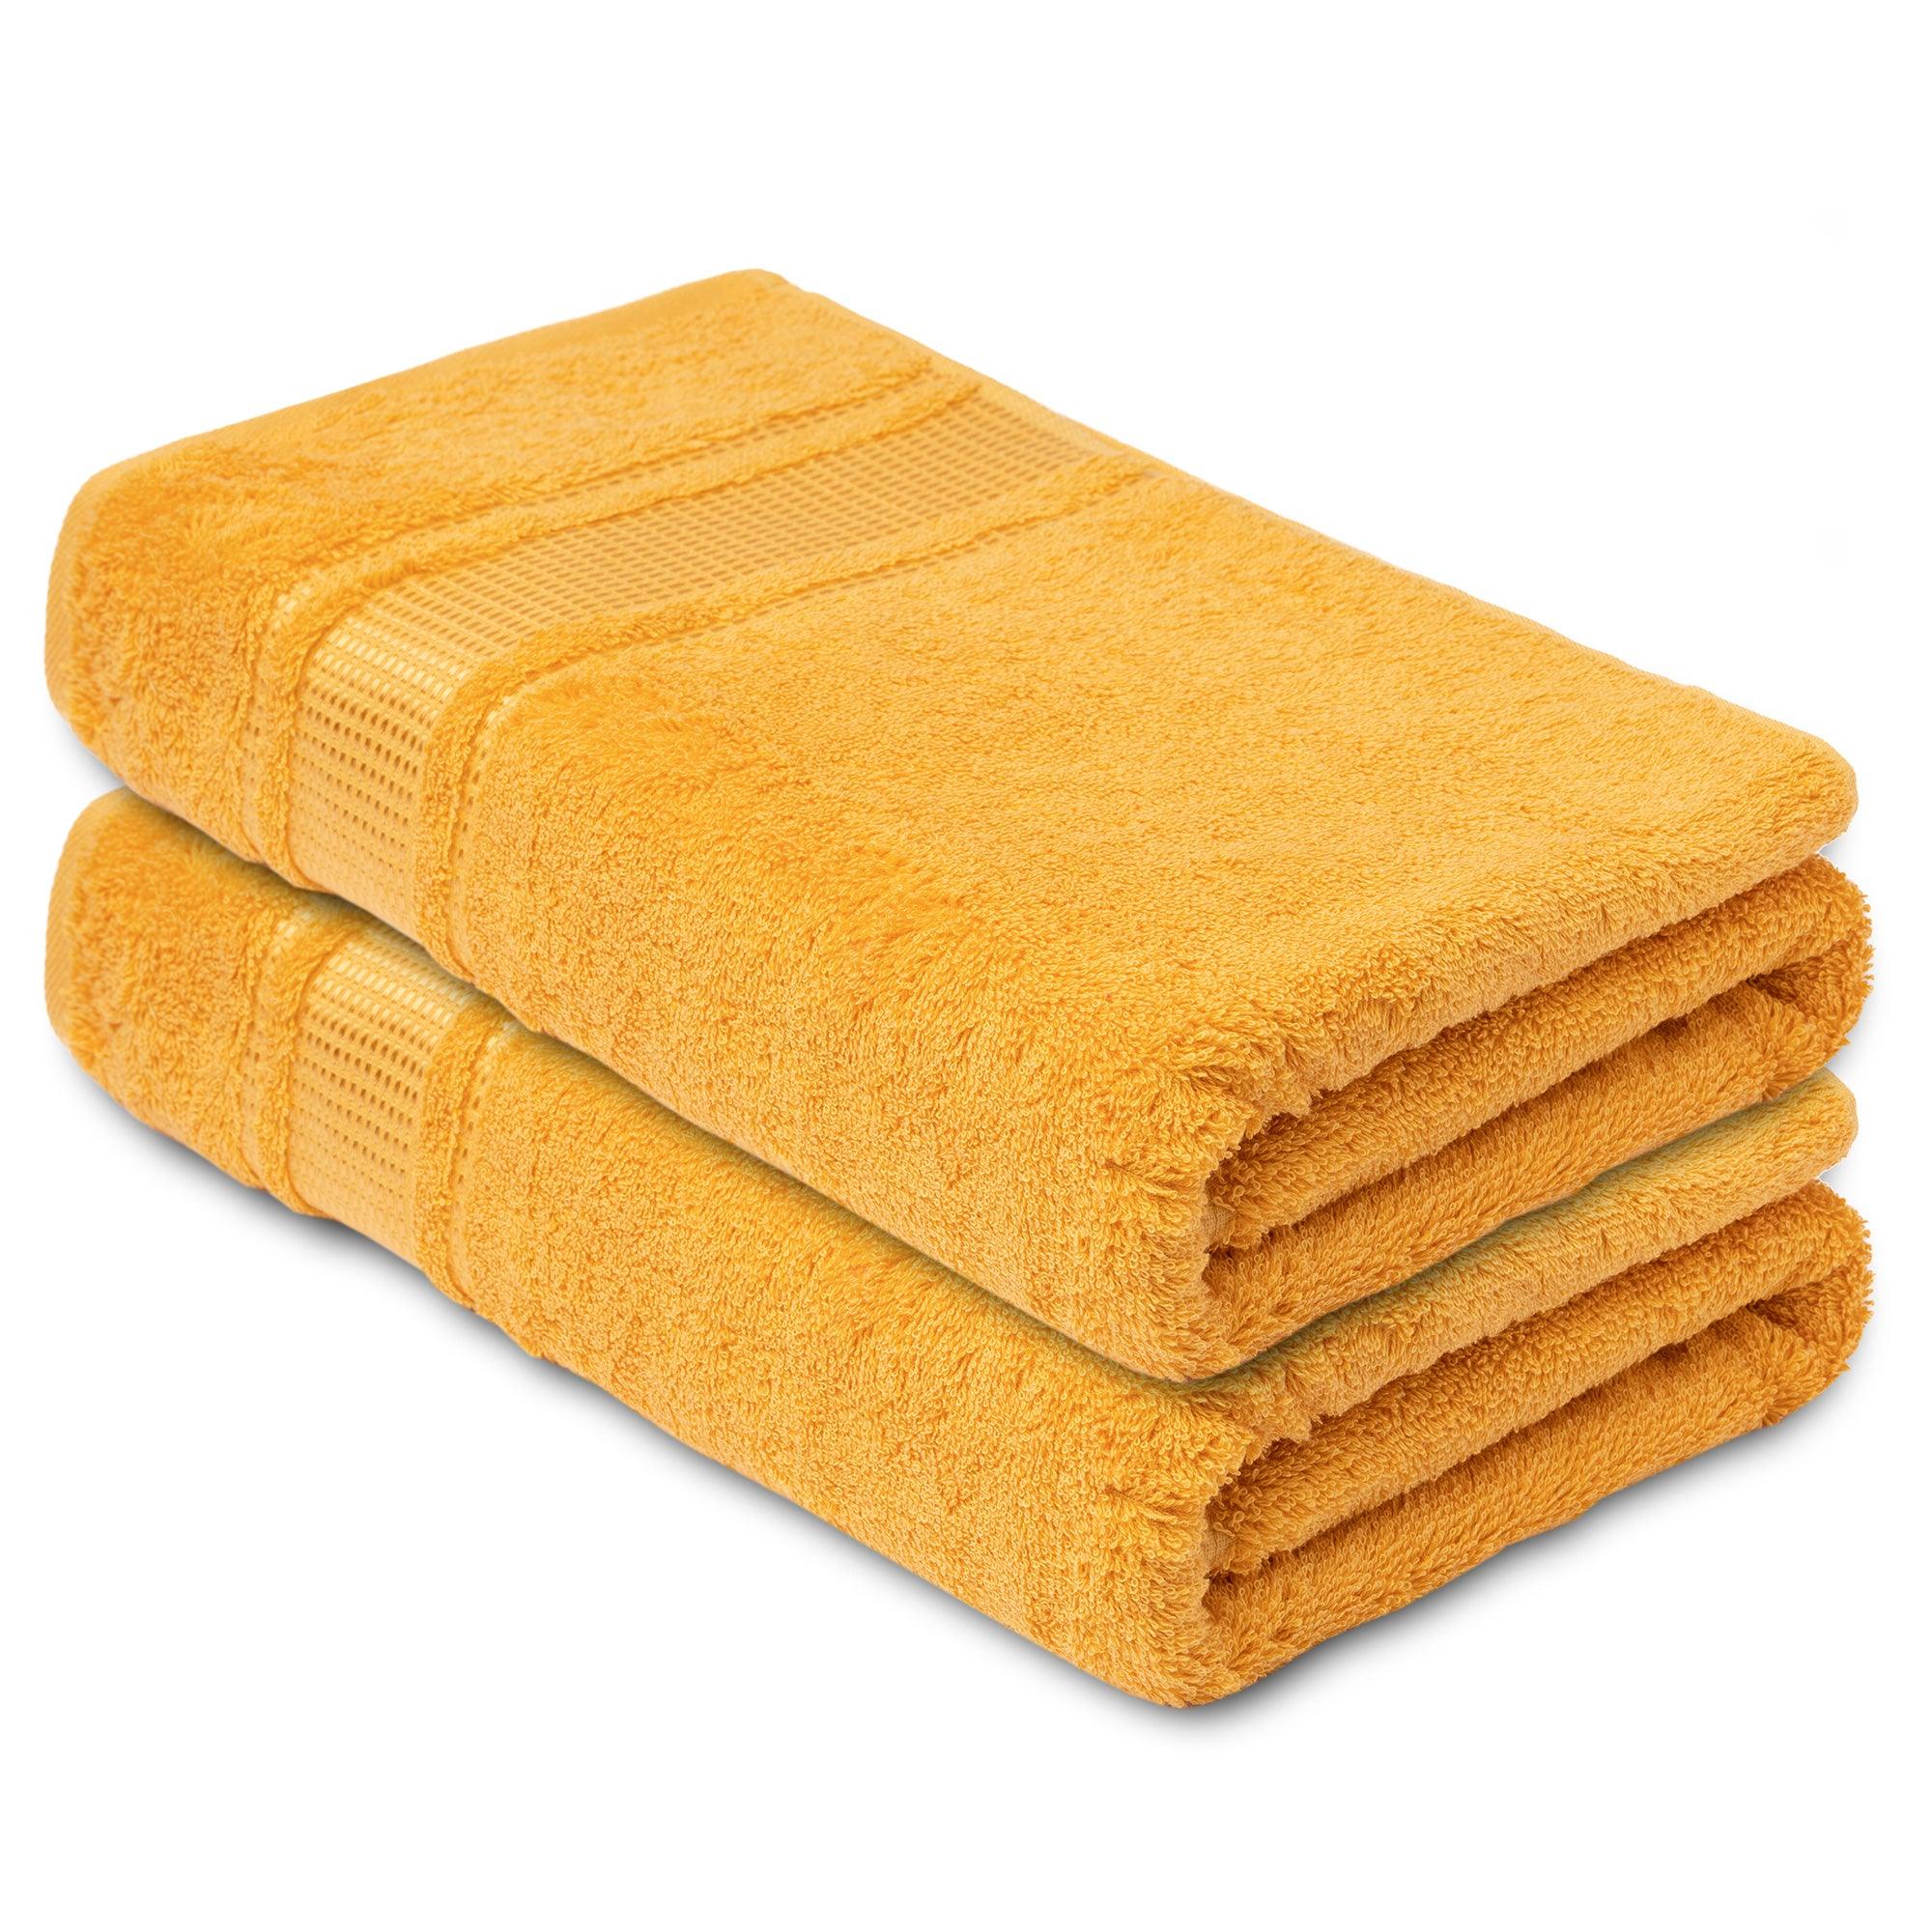 https://melissalinen.com/cdn/shop/products/2-pack-bath-towel-yellow-absorbent.jpg?v=1695852948